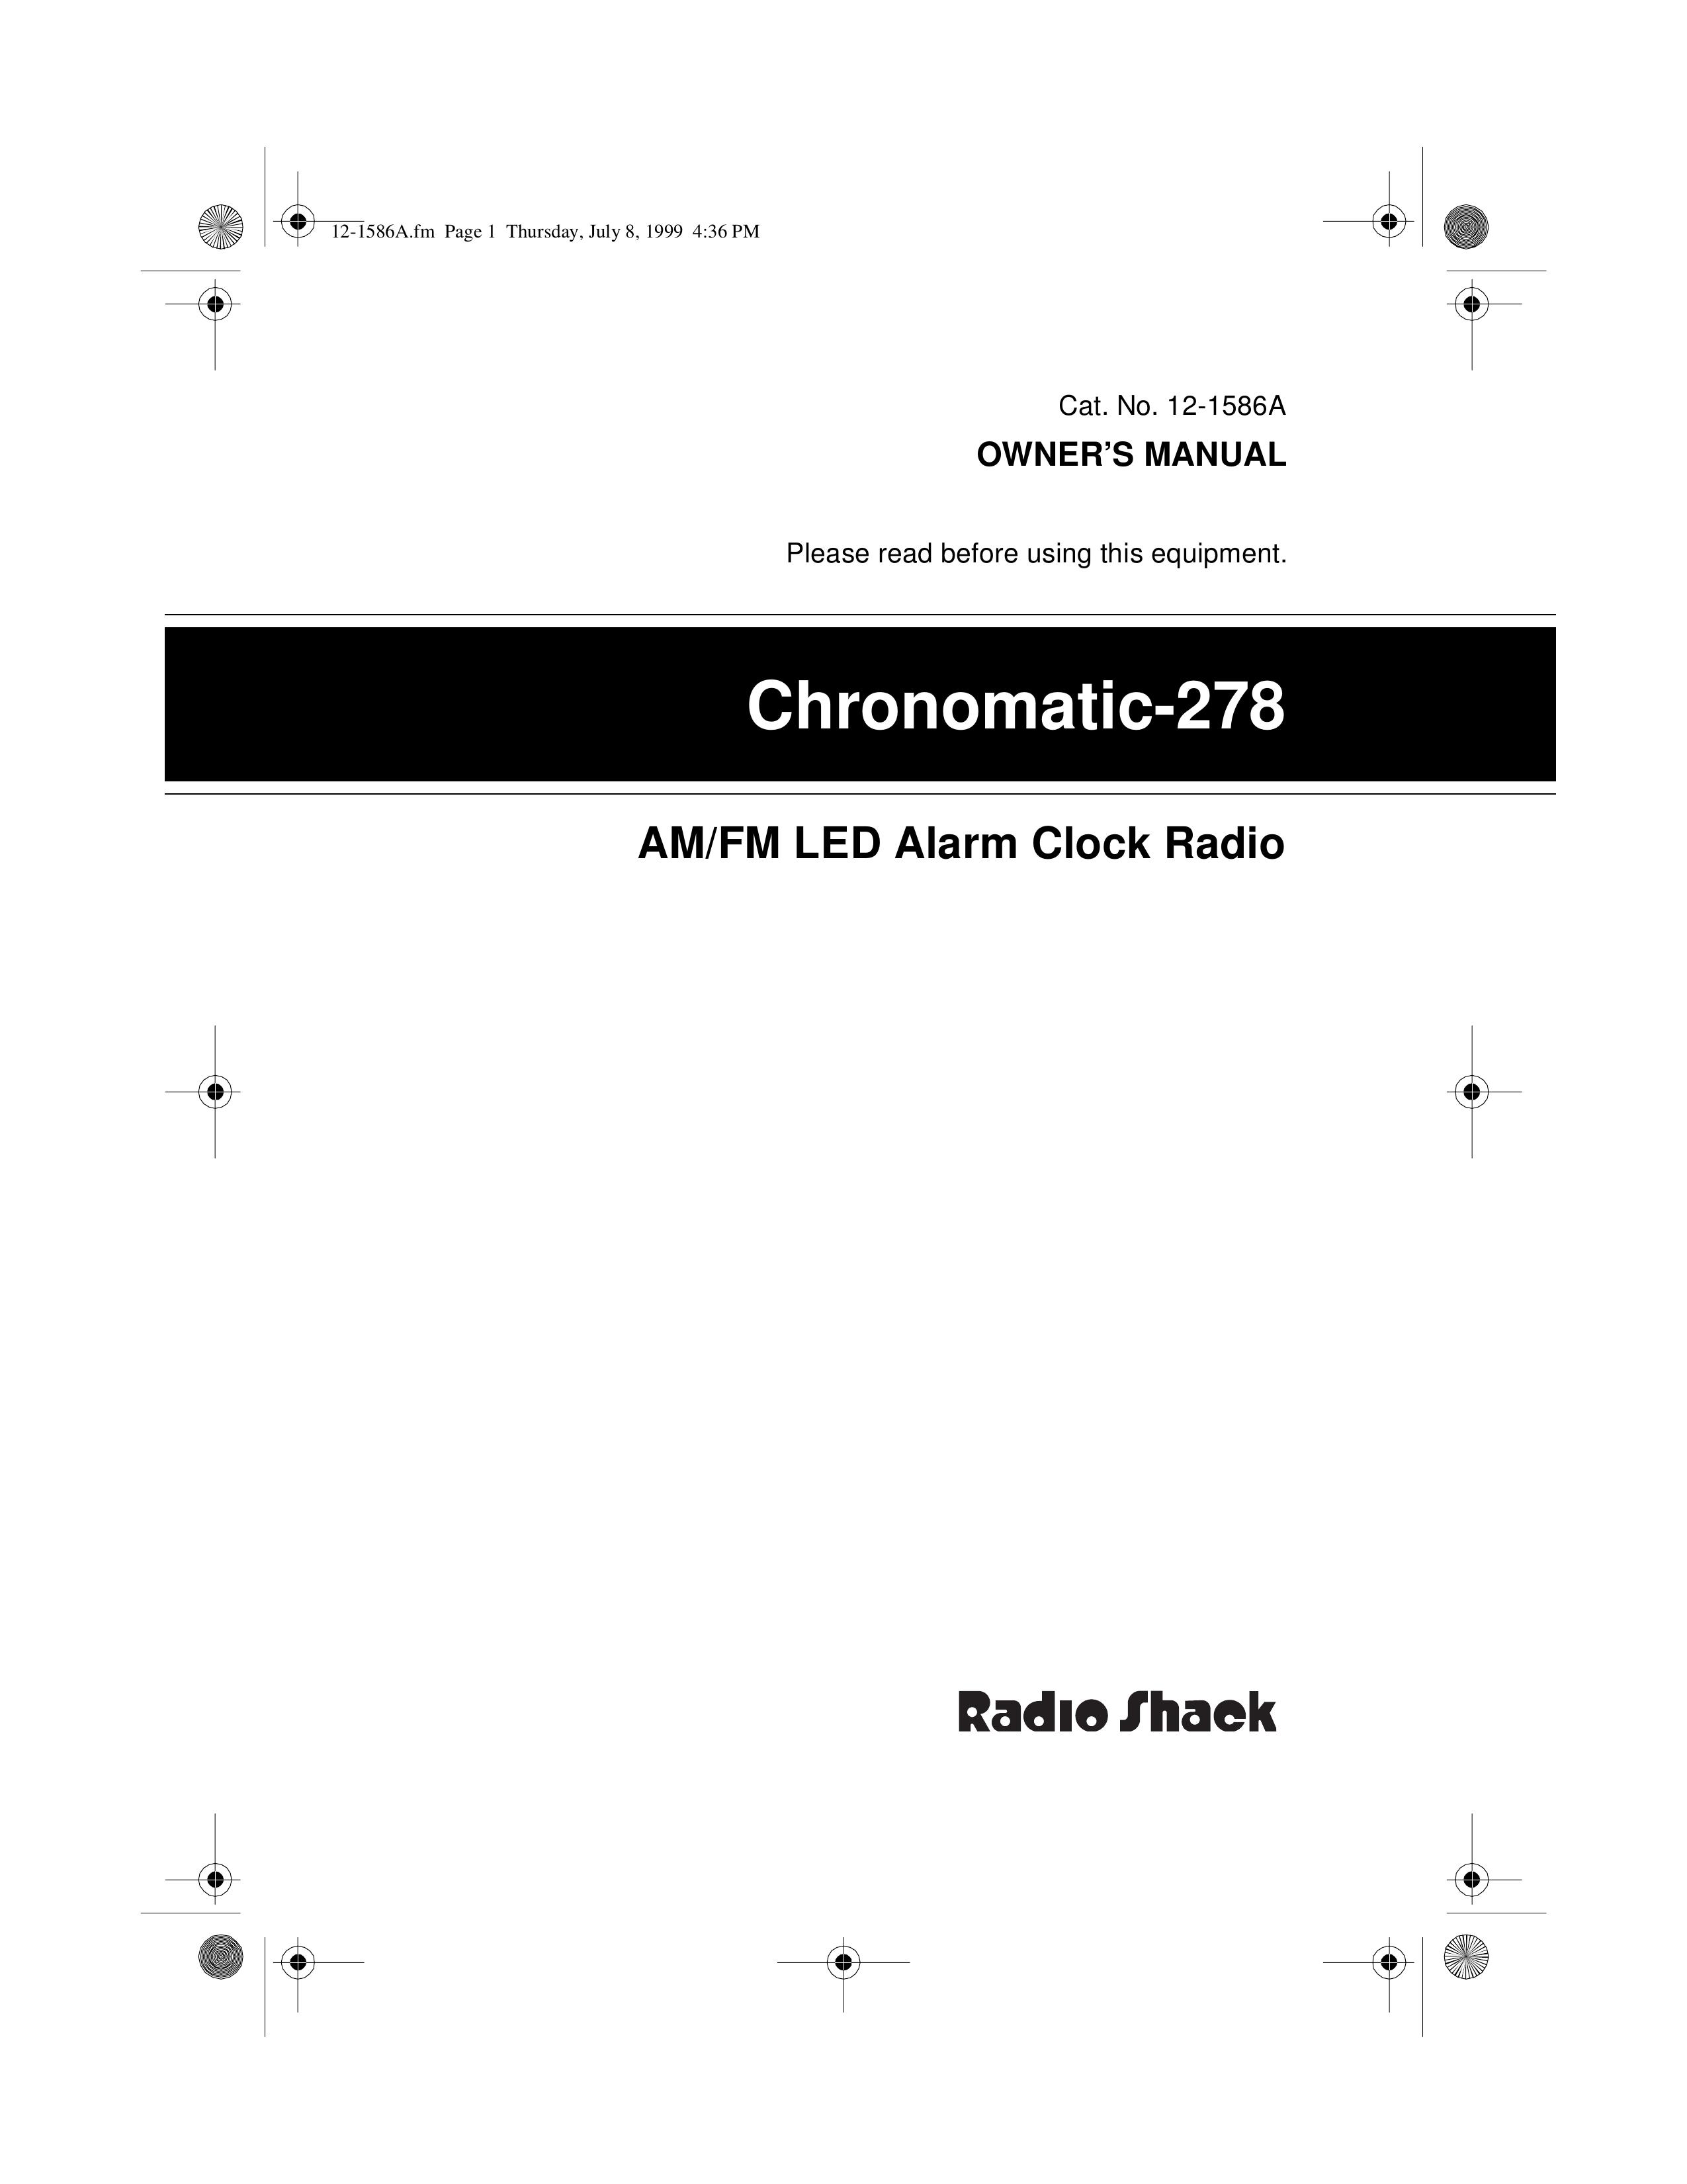 Radio Shack Chronomatic-278 Clock Radio User Manual